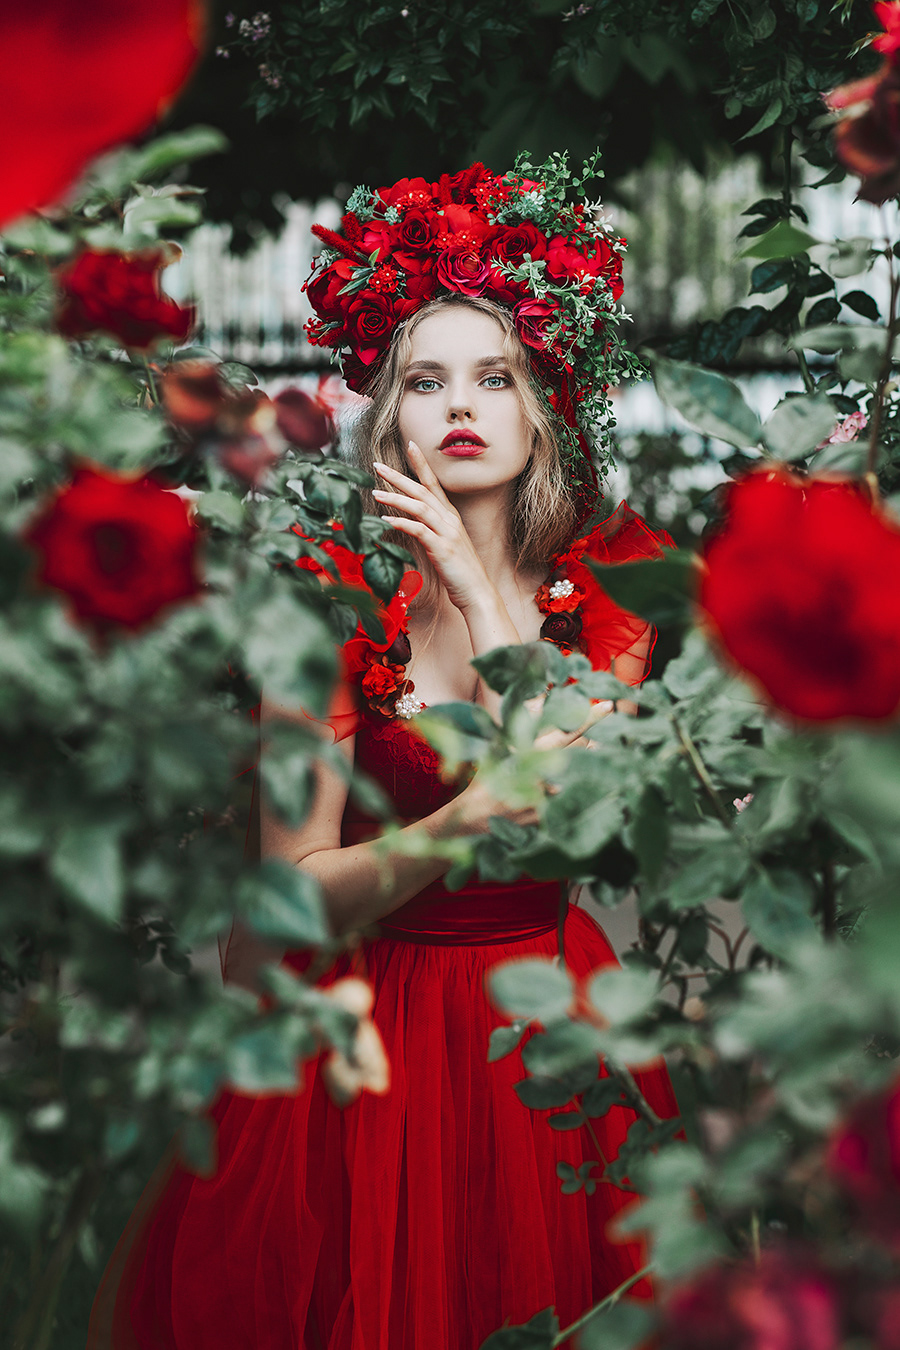 girl woman people red dreamy dress flower